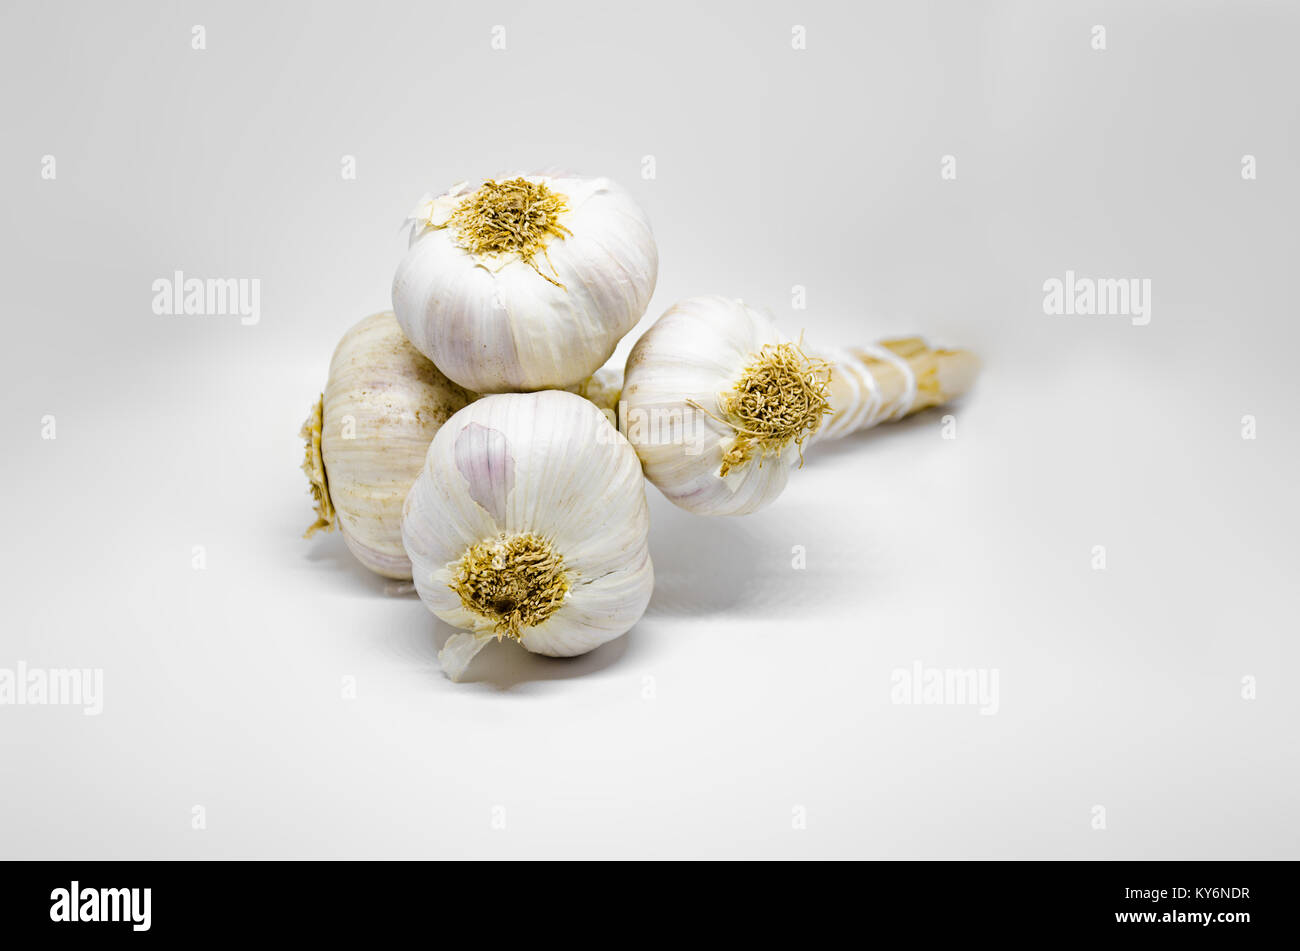 Quattro bulbi di aglio attaccato a stelo e legati insieme. Fotografato su uno sfondo bianco. Foto Stock